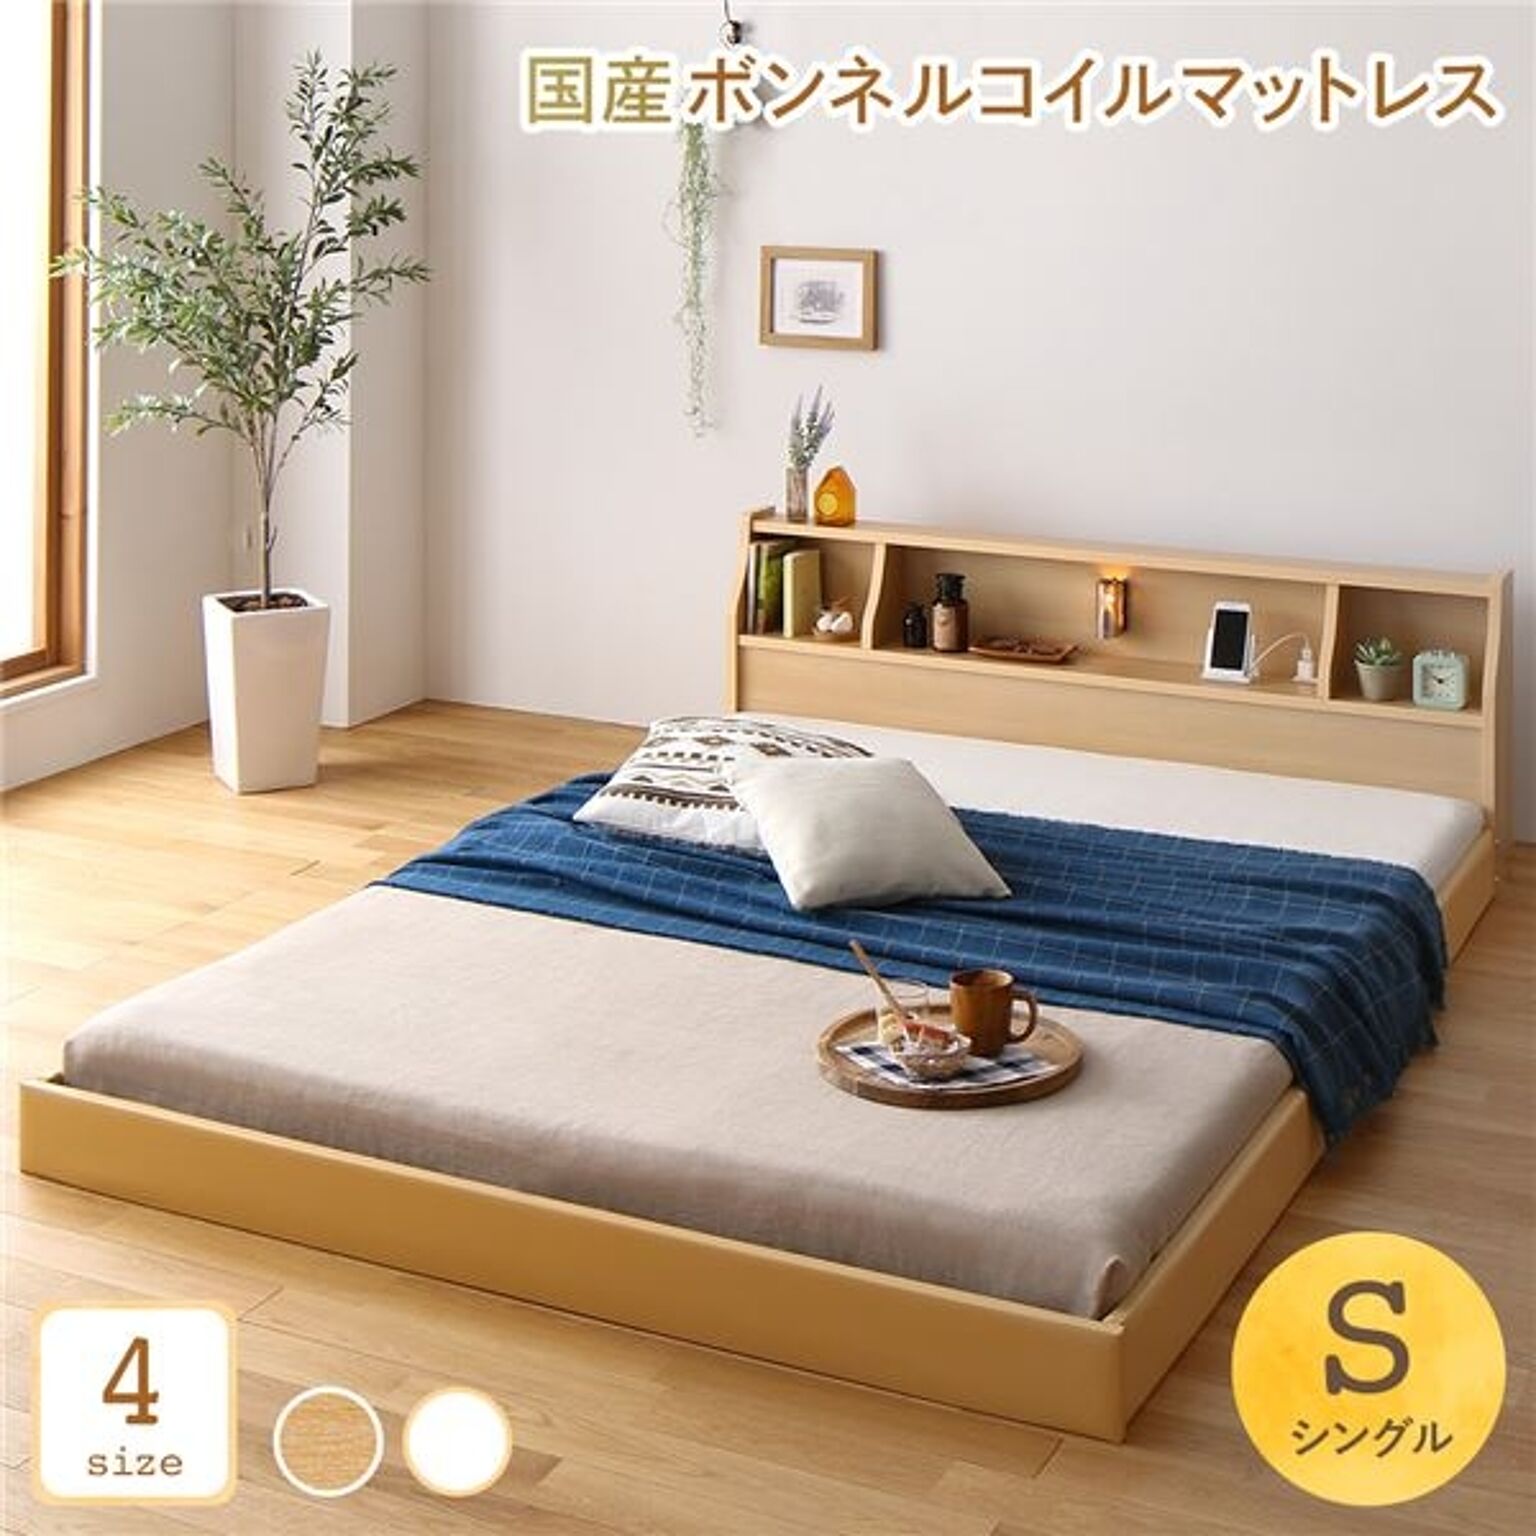 日本製 ロータイプ ベッド シングル サイズ 木製 低床 フロア 照明付き